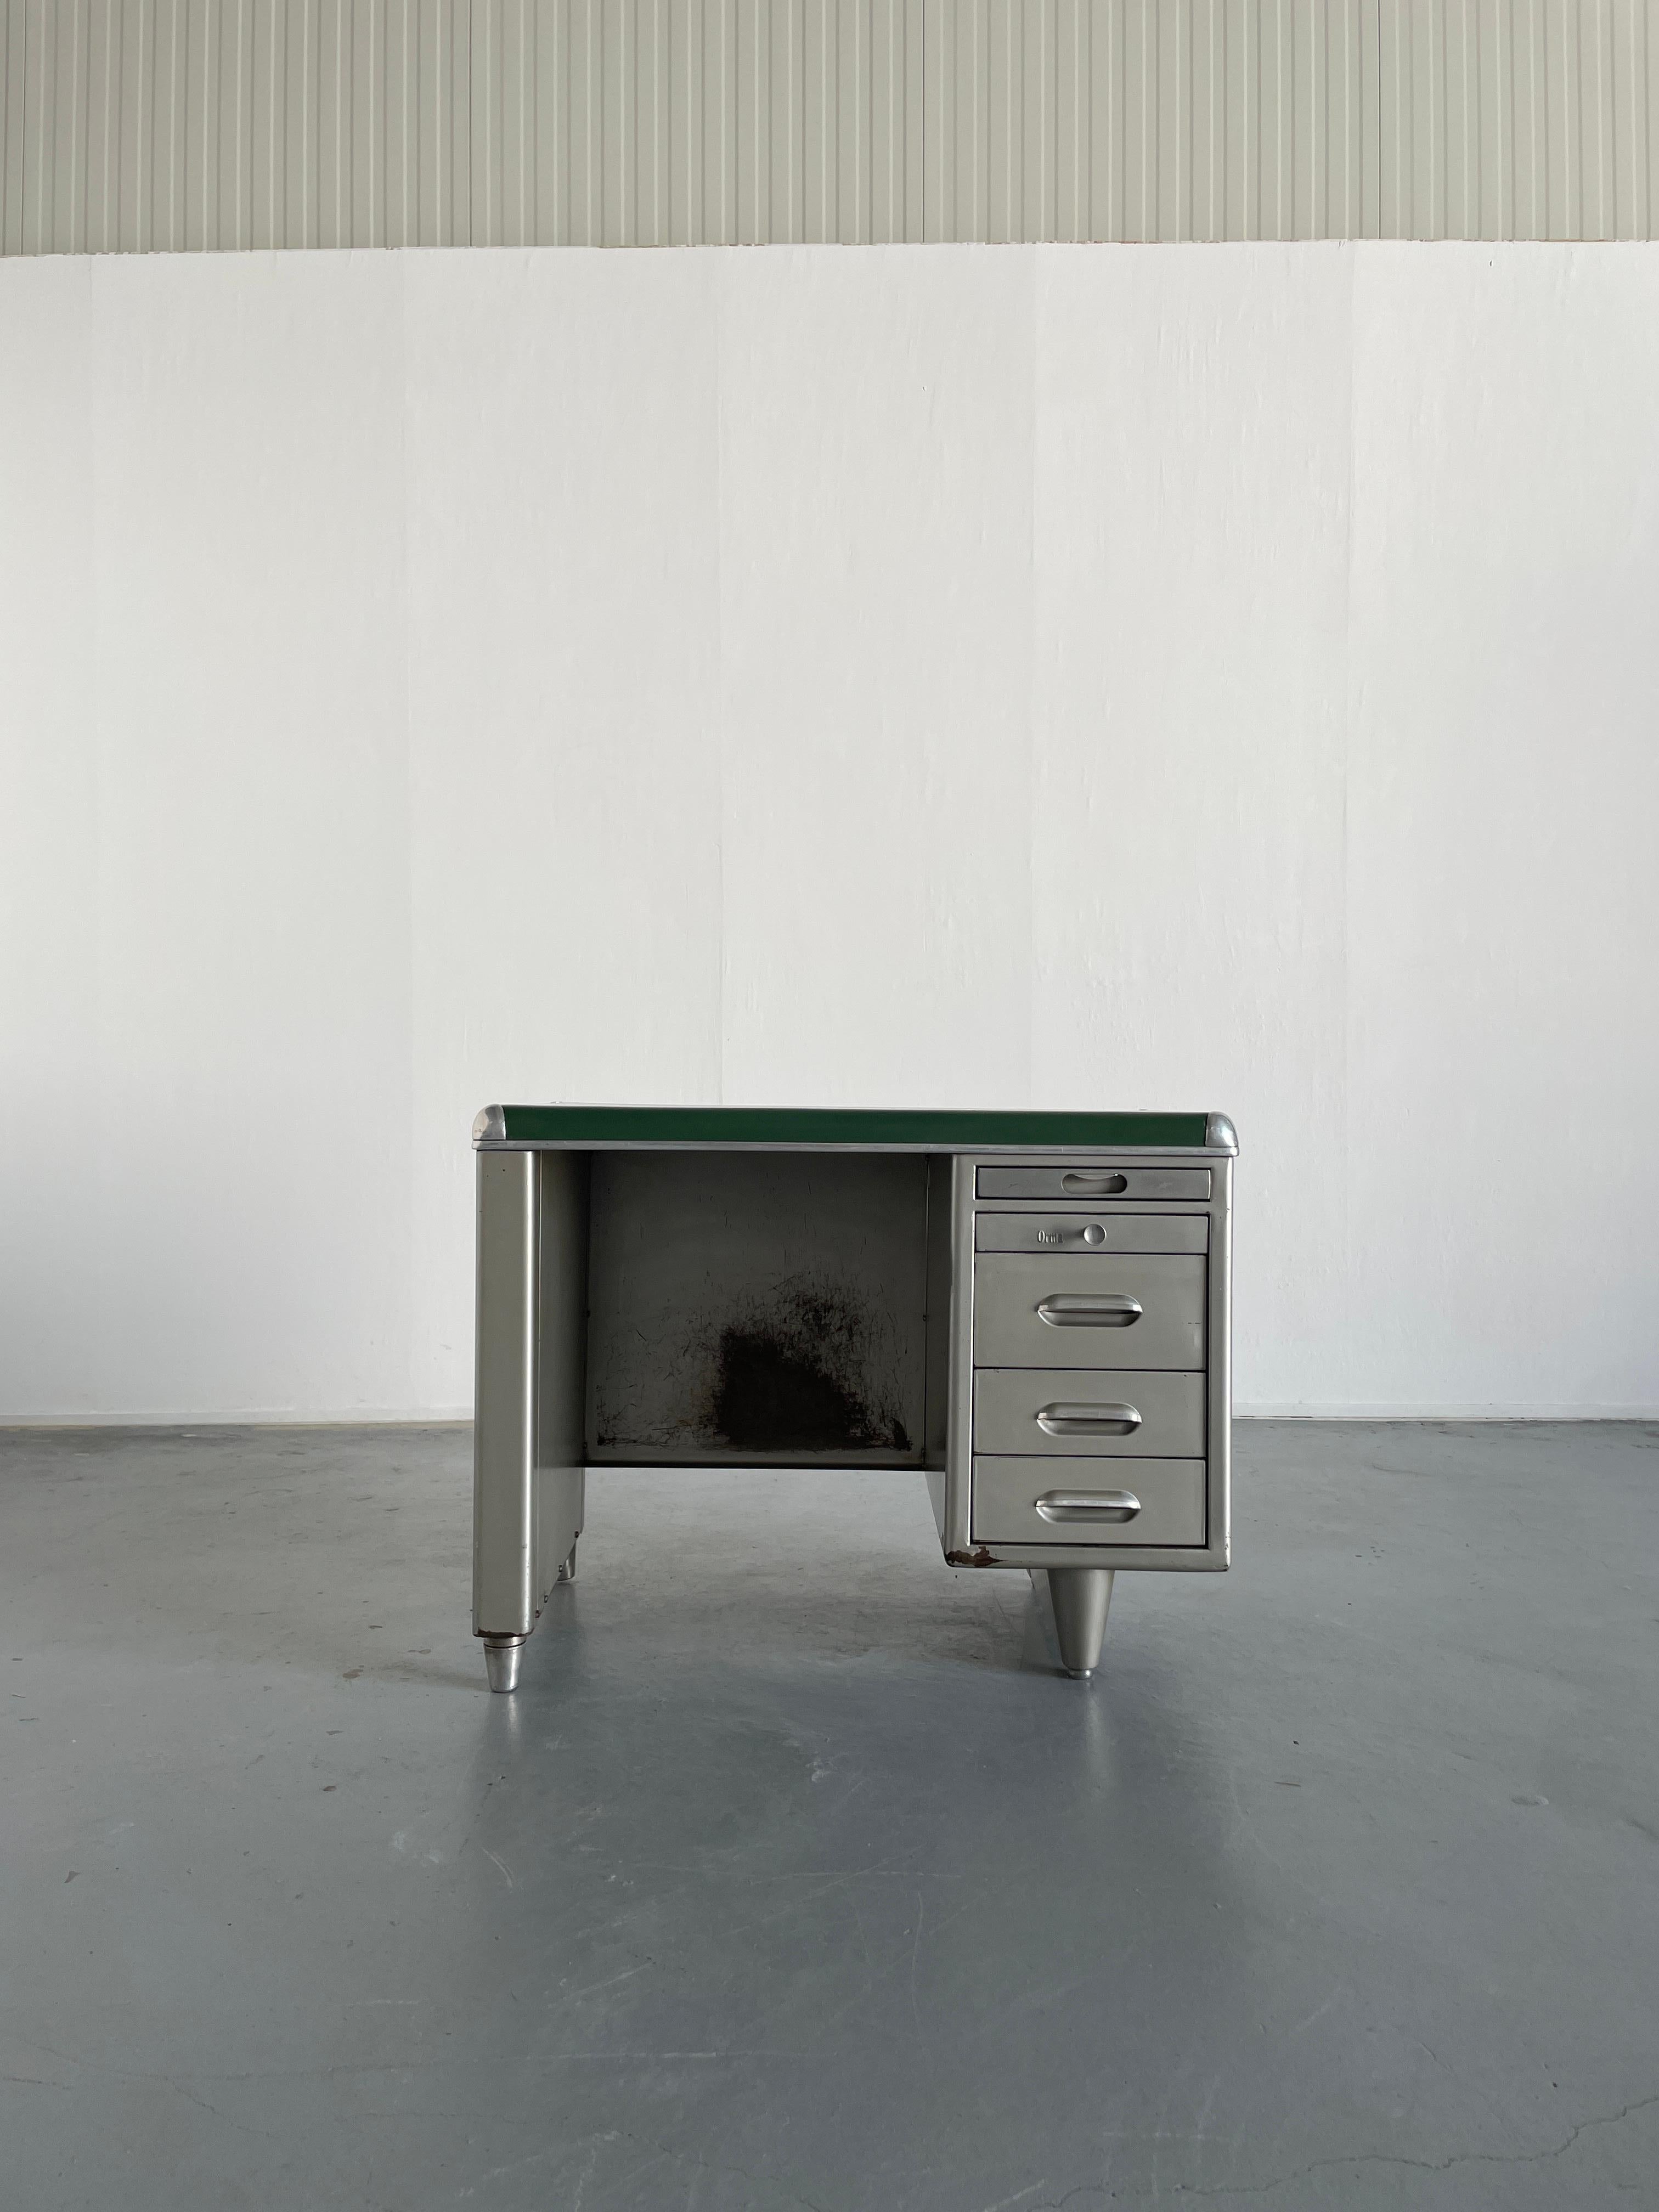 Un petit bureau unique de style industriel des années 1950 en acier à une seule banque, avec un plateau vert, produit par Orma Milano en Italie.
Comprend quatre tiroirs de tailles différentes et un cinquième tiroir supérieur qui peut être utilisé